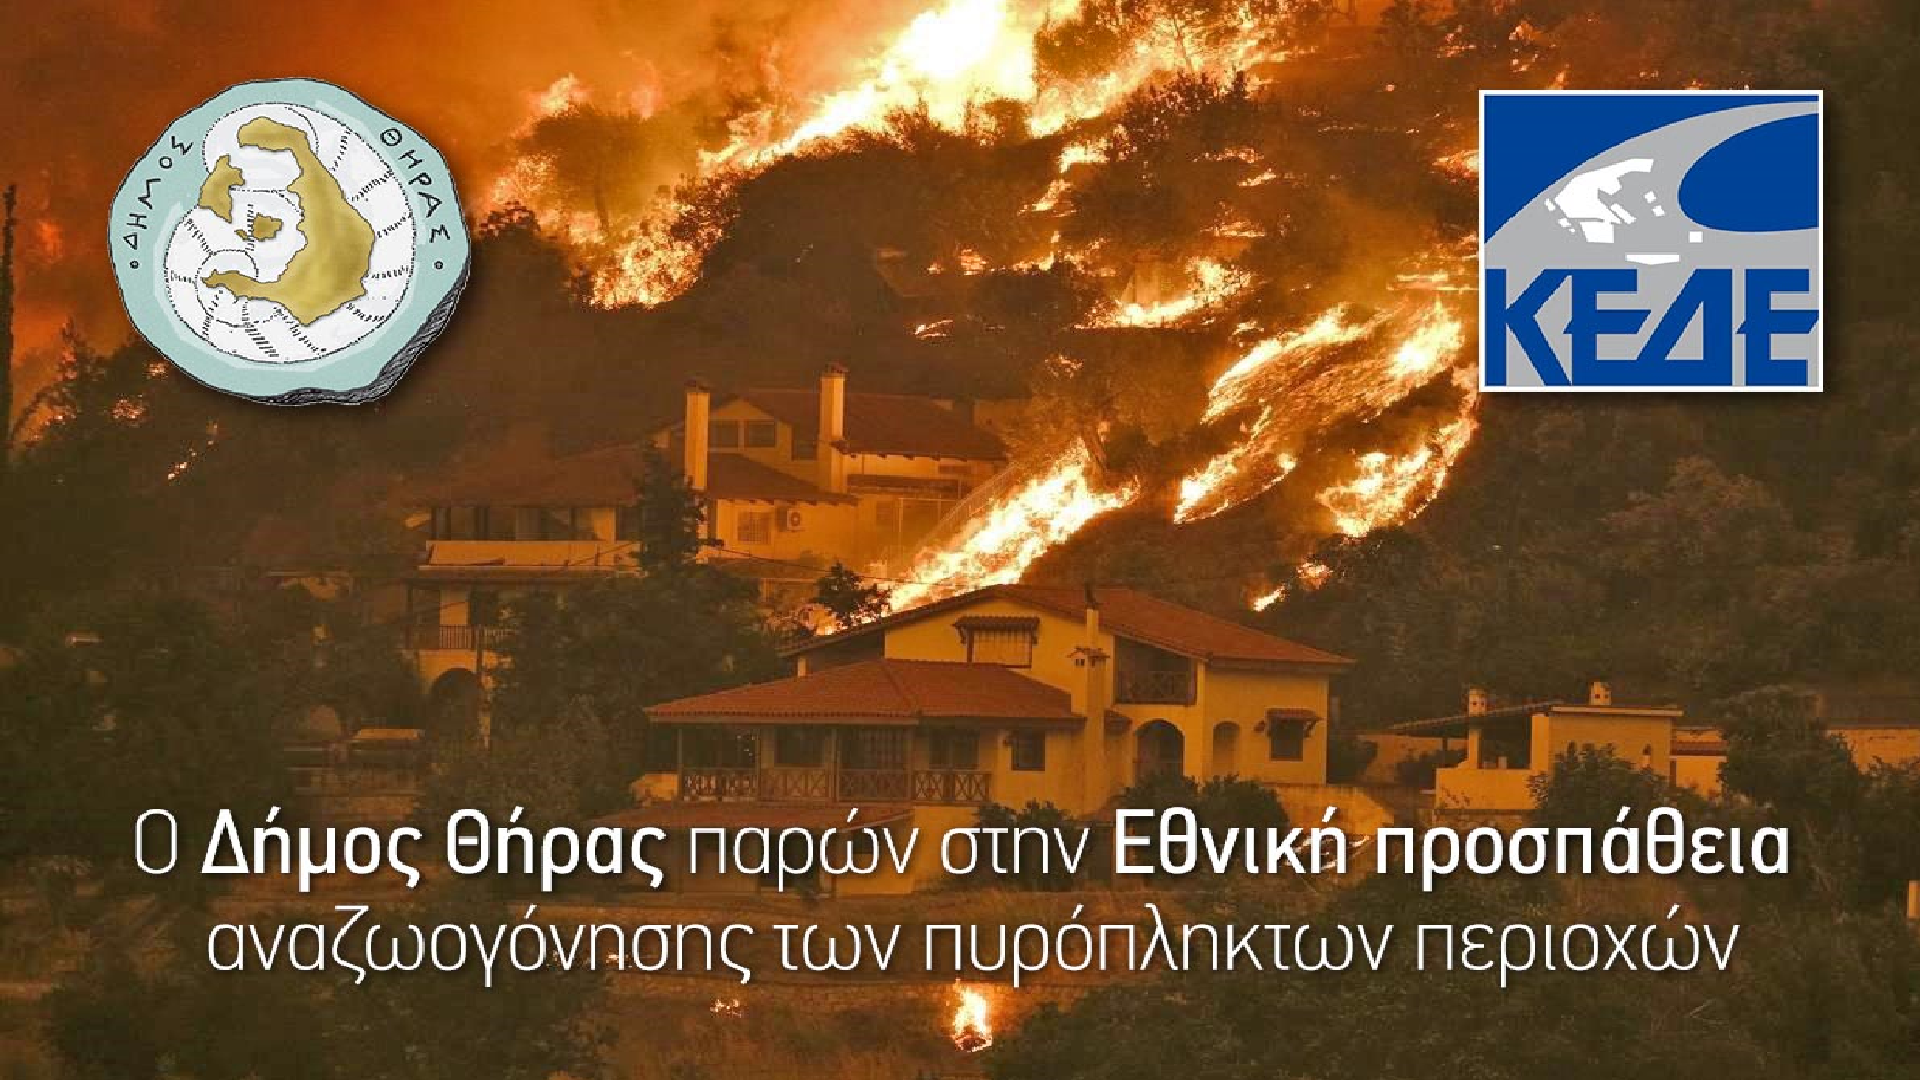 Ο Δήμος Θήρας δηλώνει παρών στην Εθνική προσπάθεια αναζωογόνησης των πυρόπληκτων περιοχών